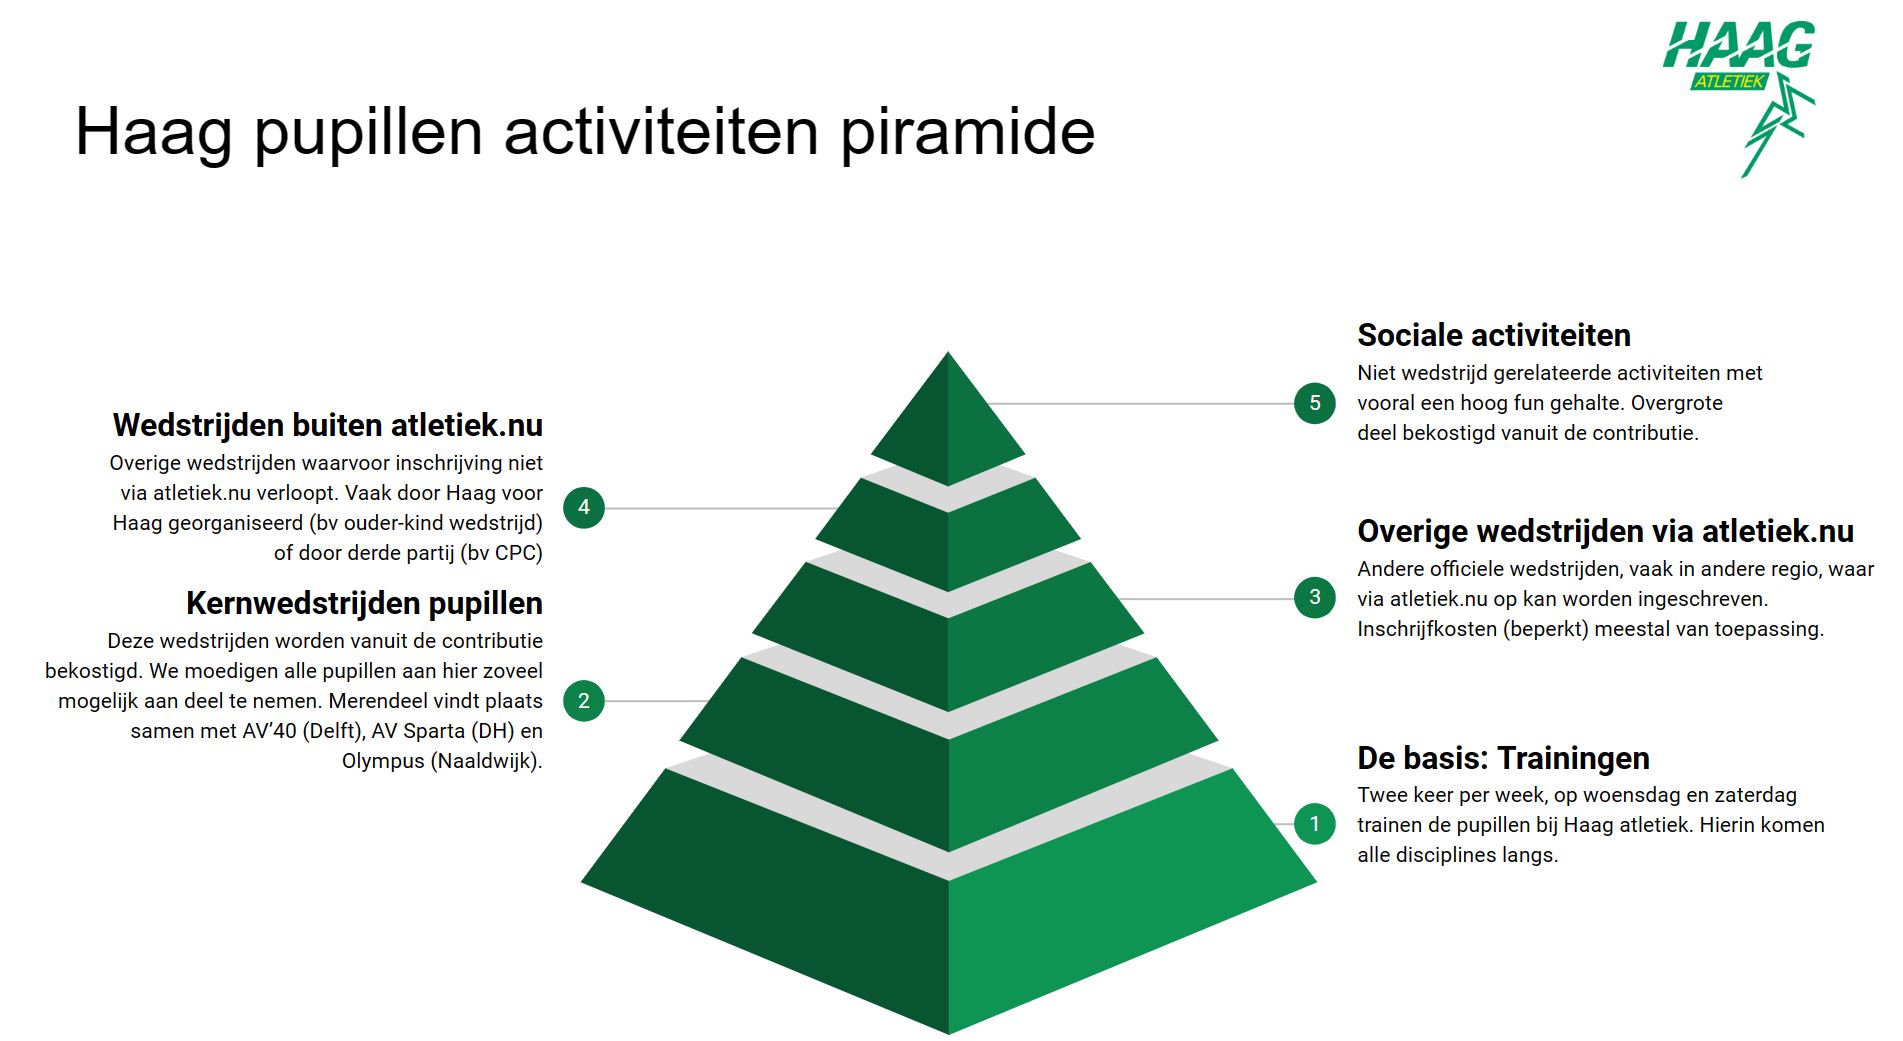 Haag pupillen activiteiten piramide